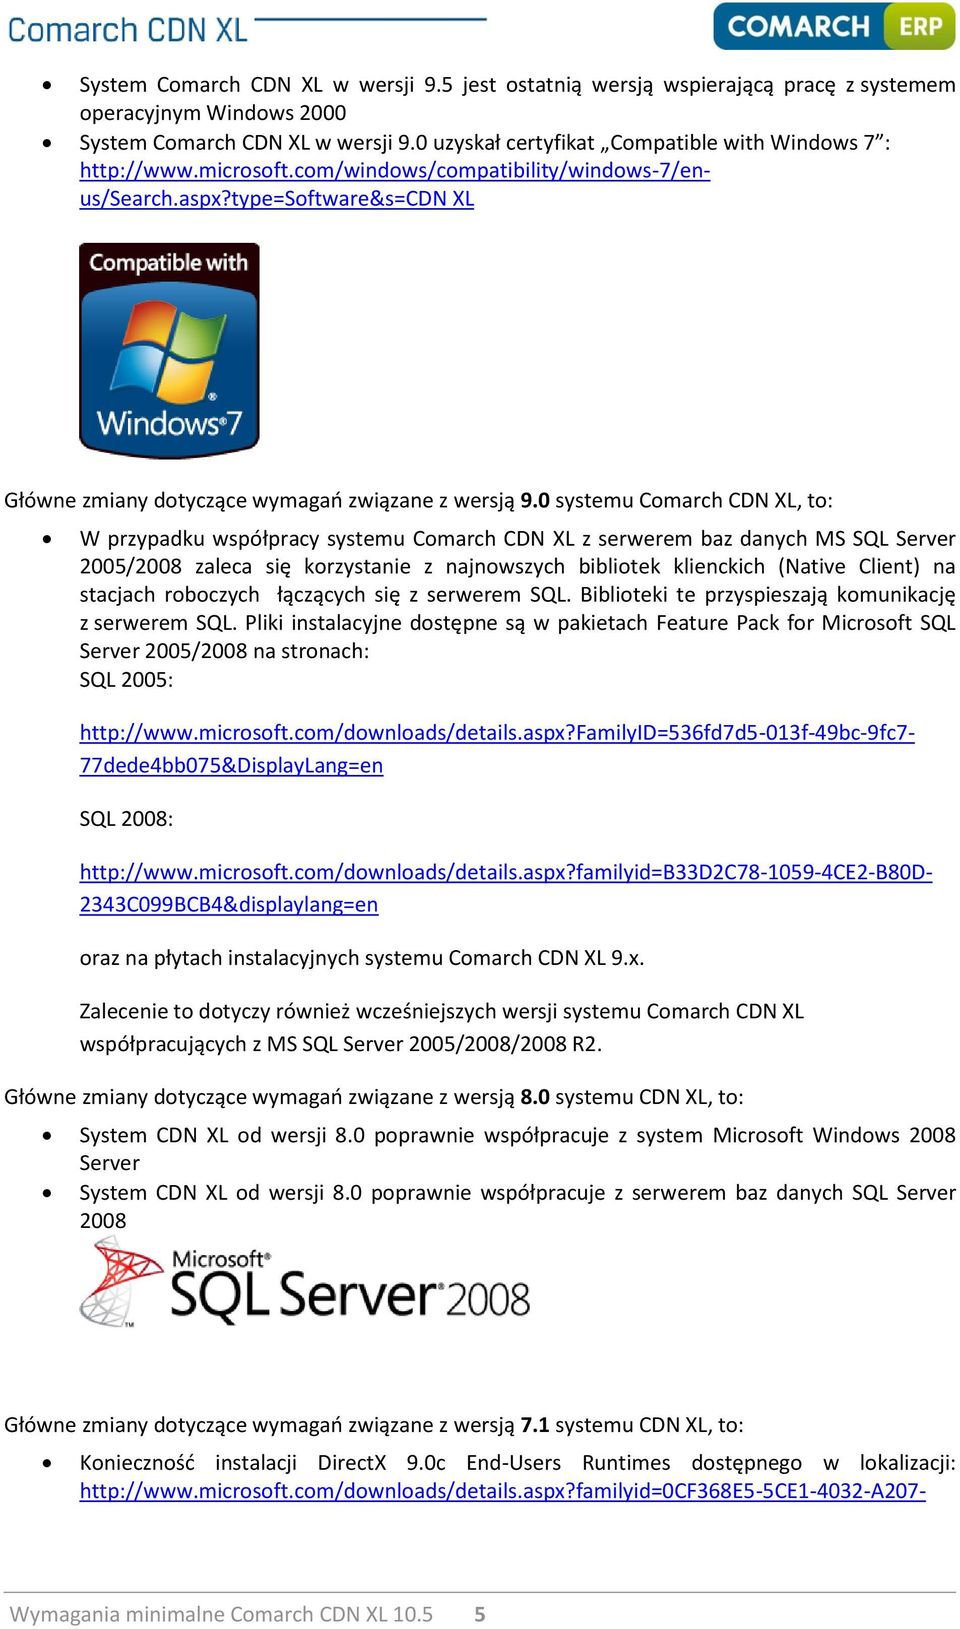 0 systemu Comarch CDN XL, to: W przypadku współpracy systemu Comarch CDN XL z serwerem baz danych MS SQL Server 2005/2008 zaleca się korzystanie z najnowszych bibliotek klienckich (Native Client) na